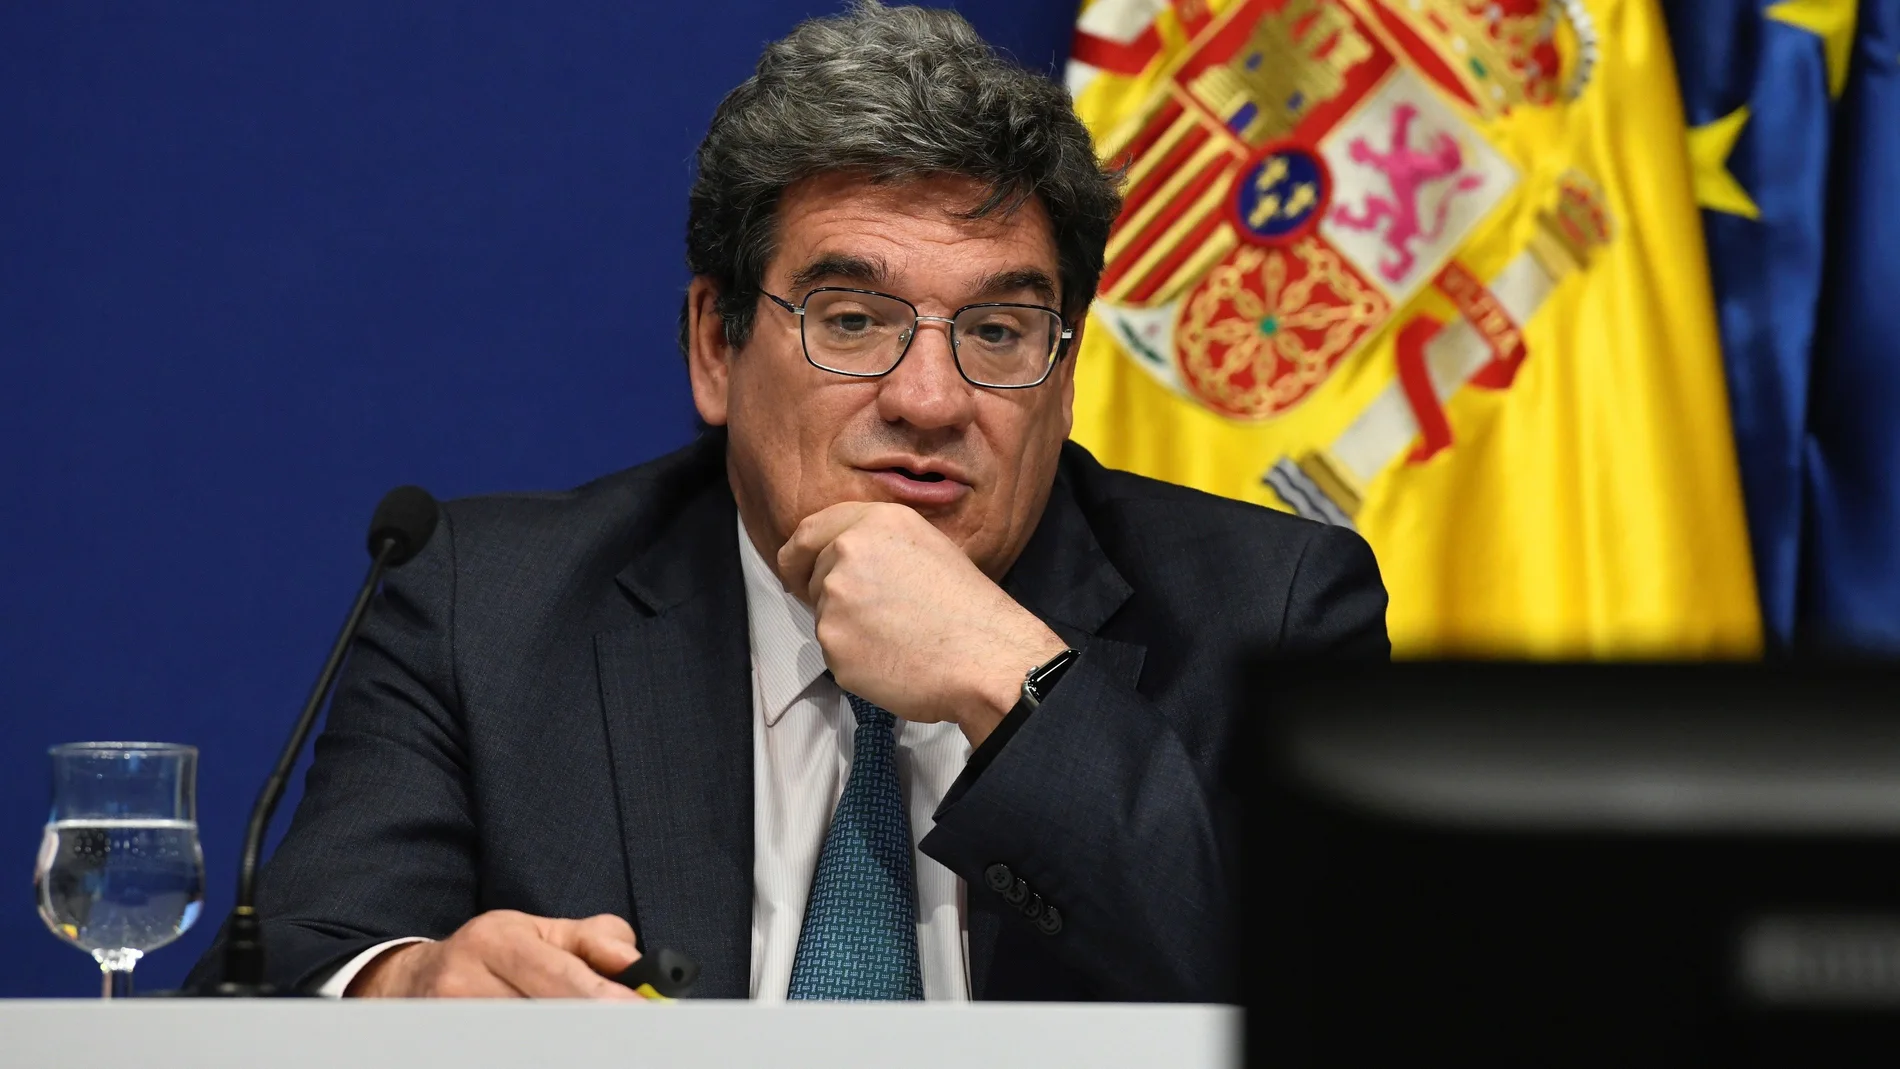 El ministro de Inclusión, Seguridad Social y Migraciones, José Luis Escrivá, presentando un balance estadístico de las medidas puestas en marcha por su ministerio durante la pandemia